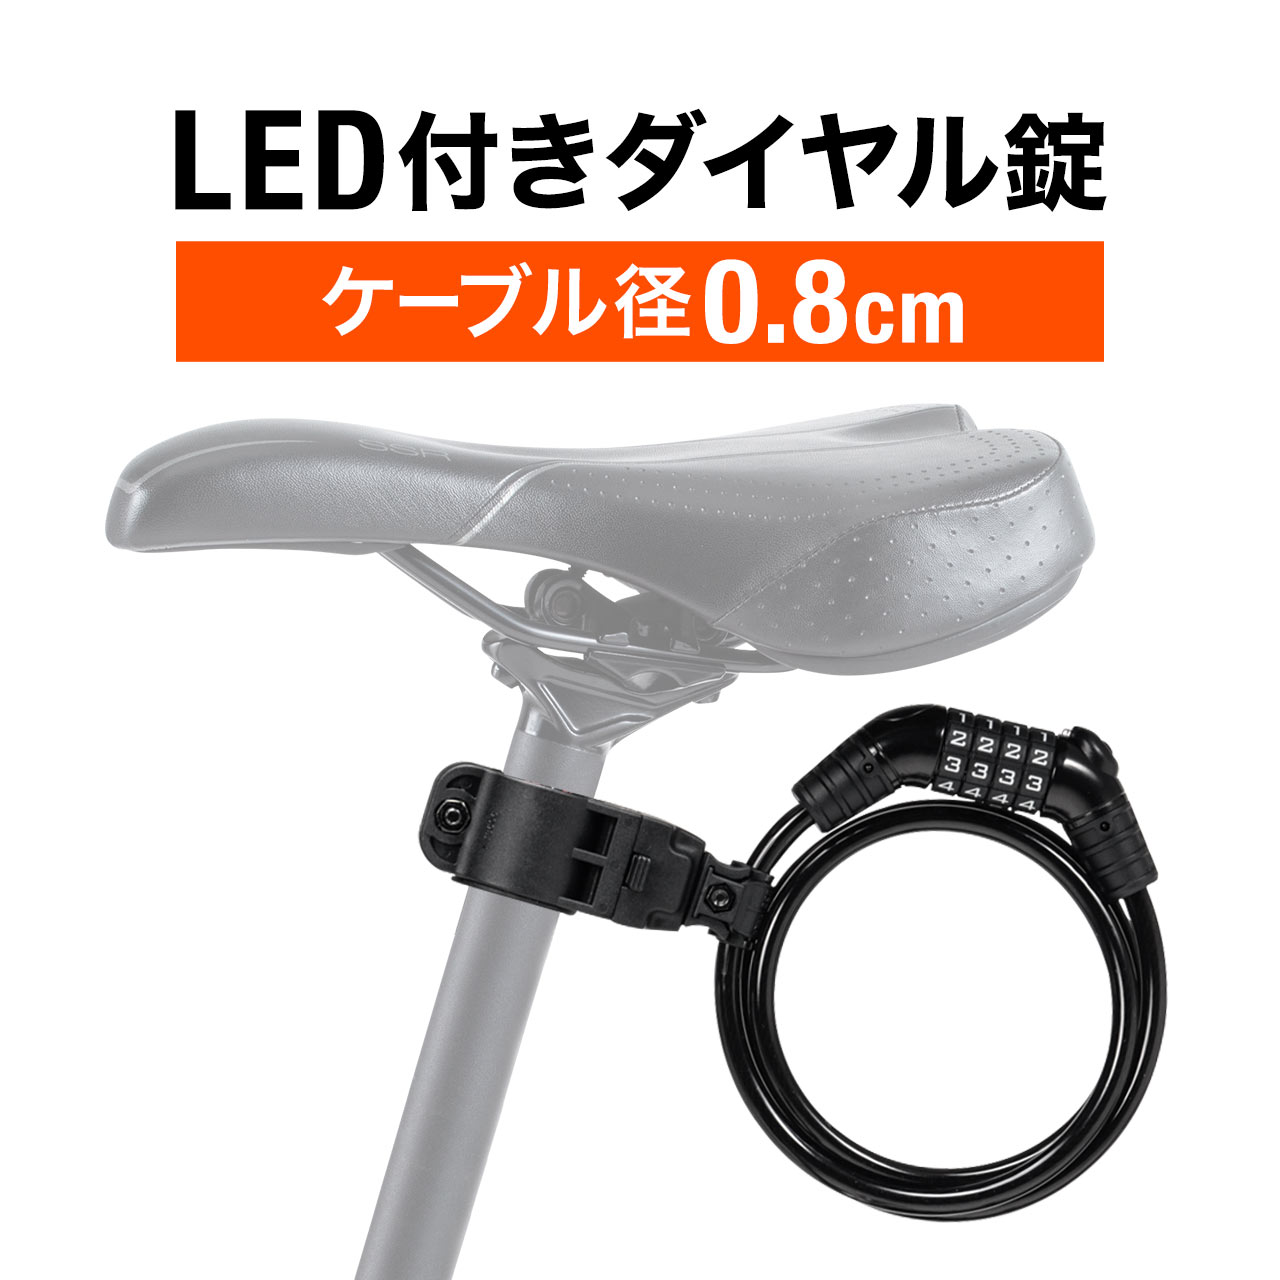 自転車 鍵 ワイヤーロック ダイヤルロック 盗難防止 LEDライト付き ダイヤル式 コンパクト ワイヤー径8mm 太い 頑丈 ロードバイク 原付 バイク 800-BYSL003